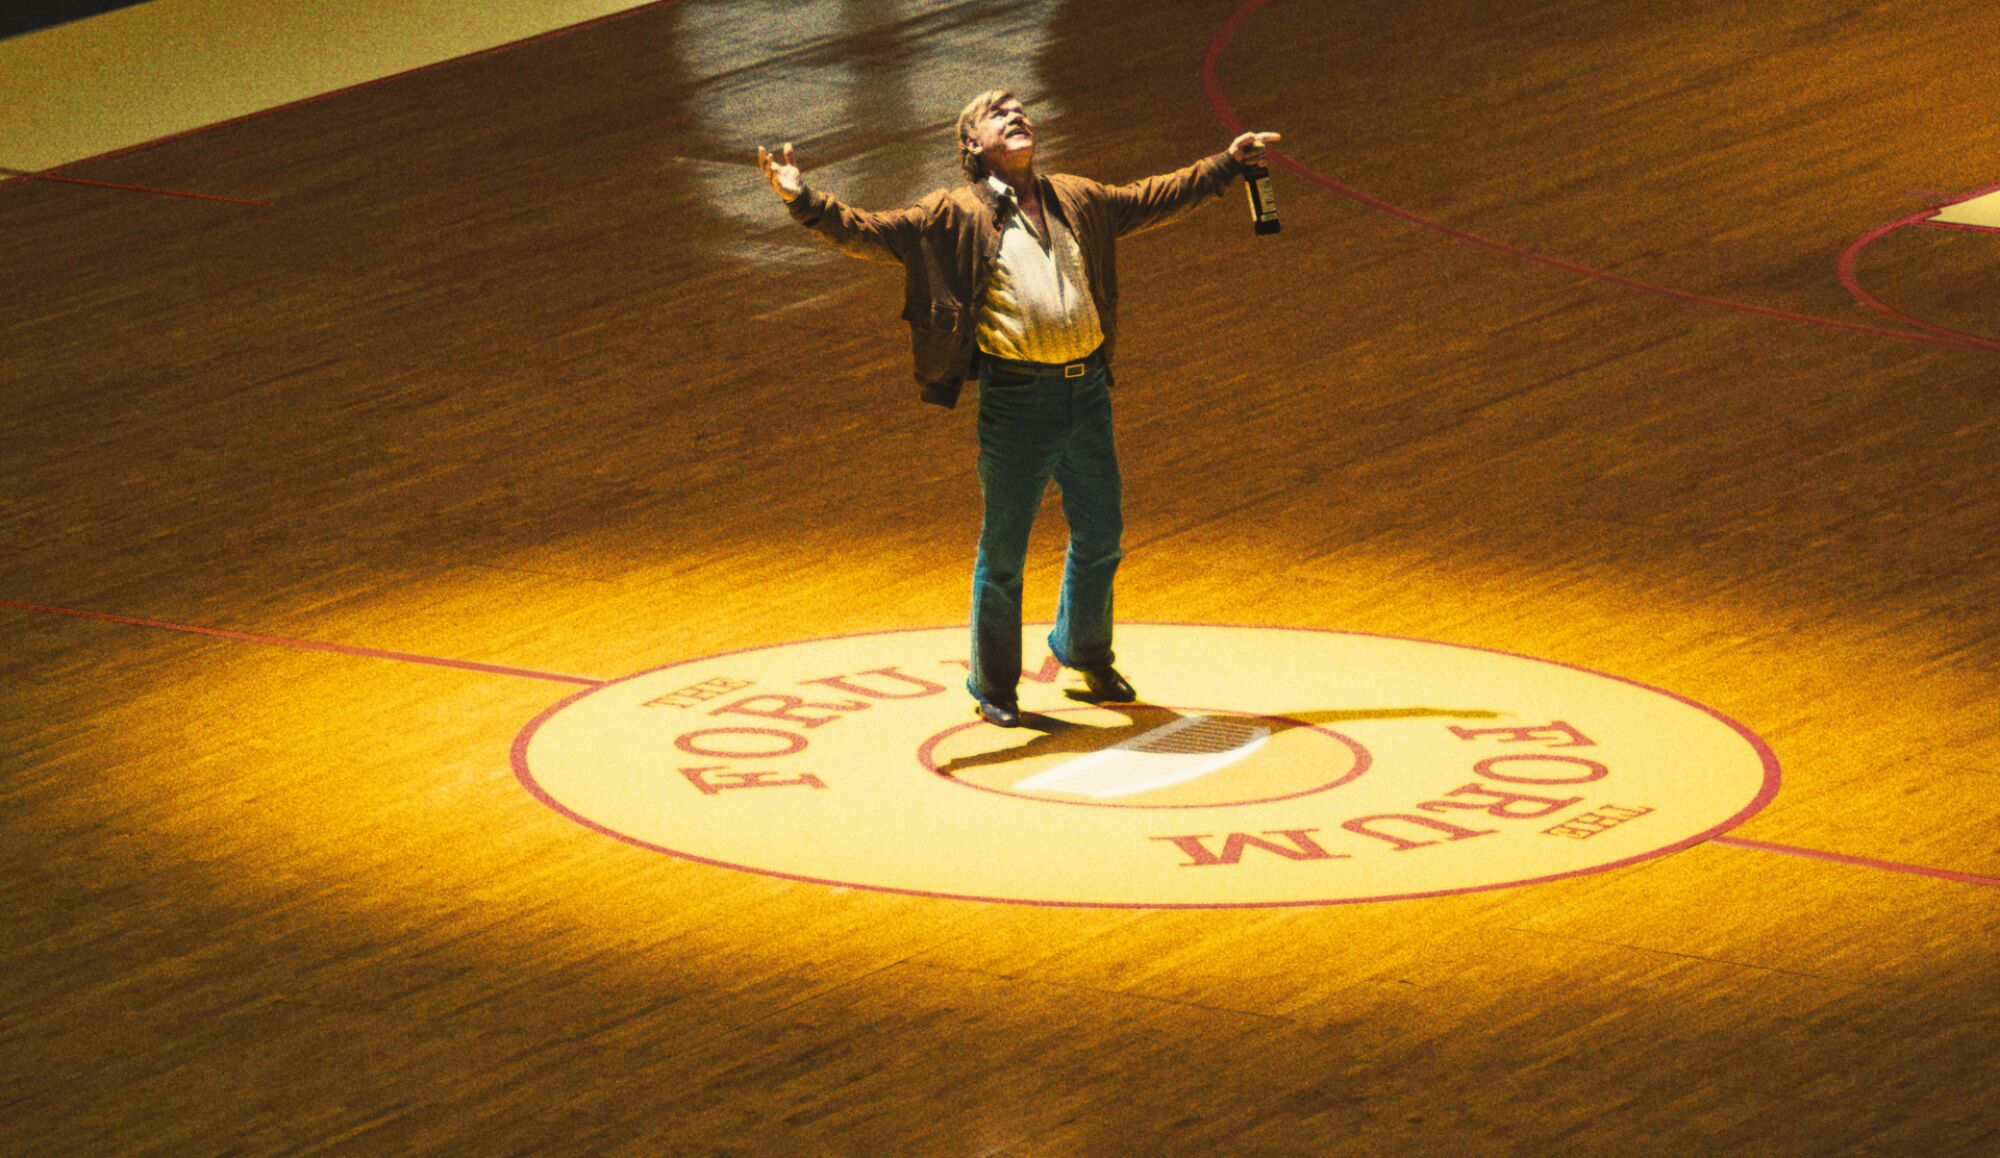 A man holding a glass bottle stands under a spotlight at halfcourt of a basketball court.